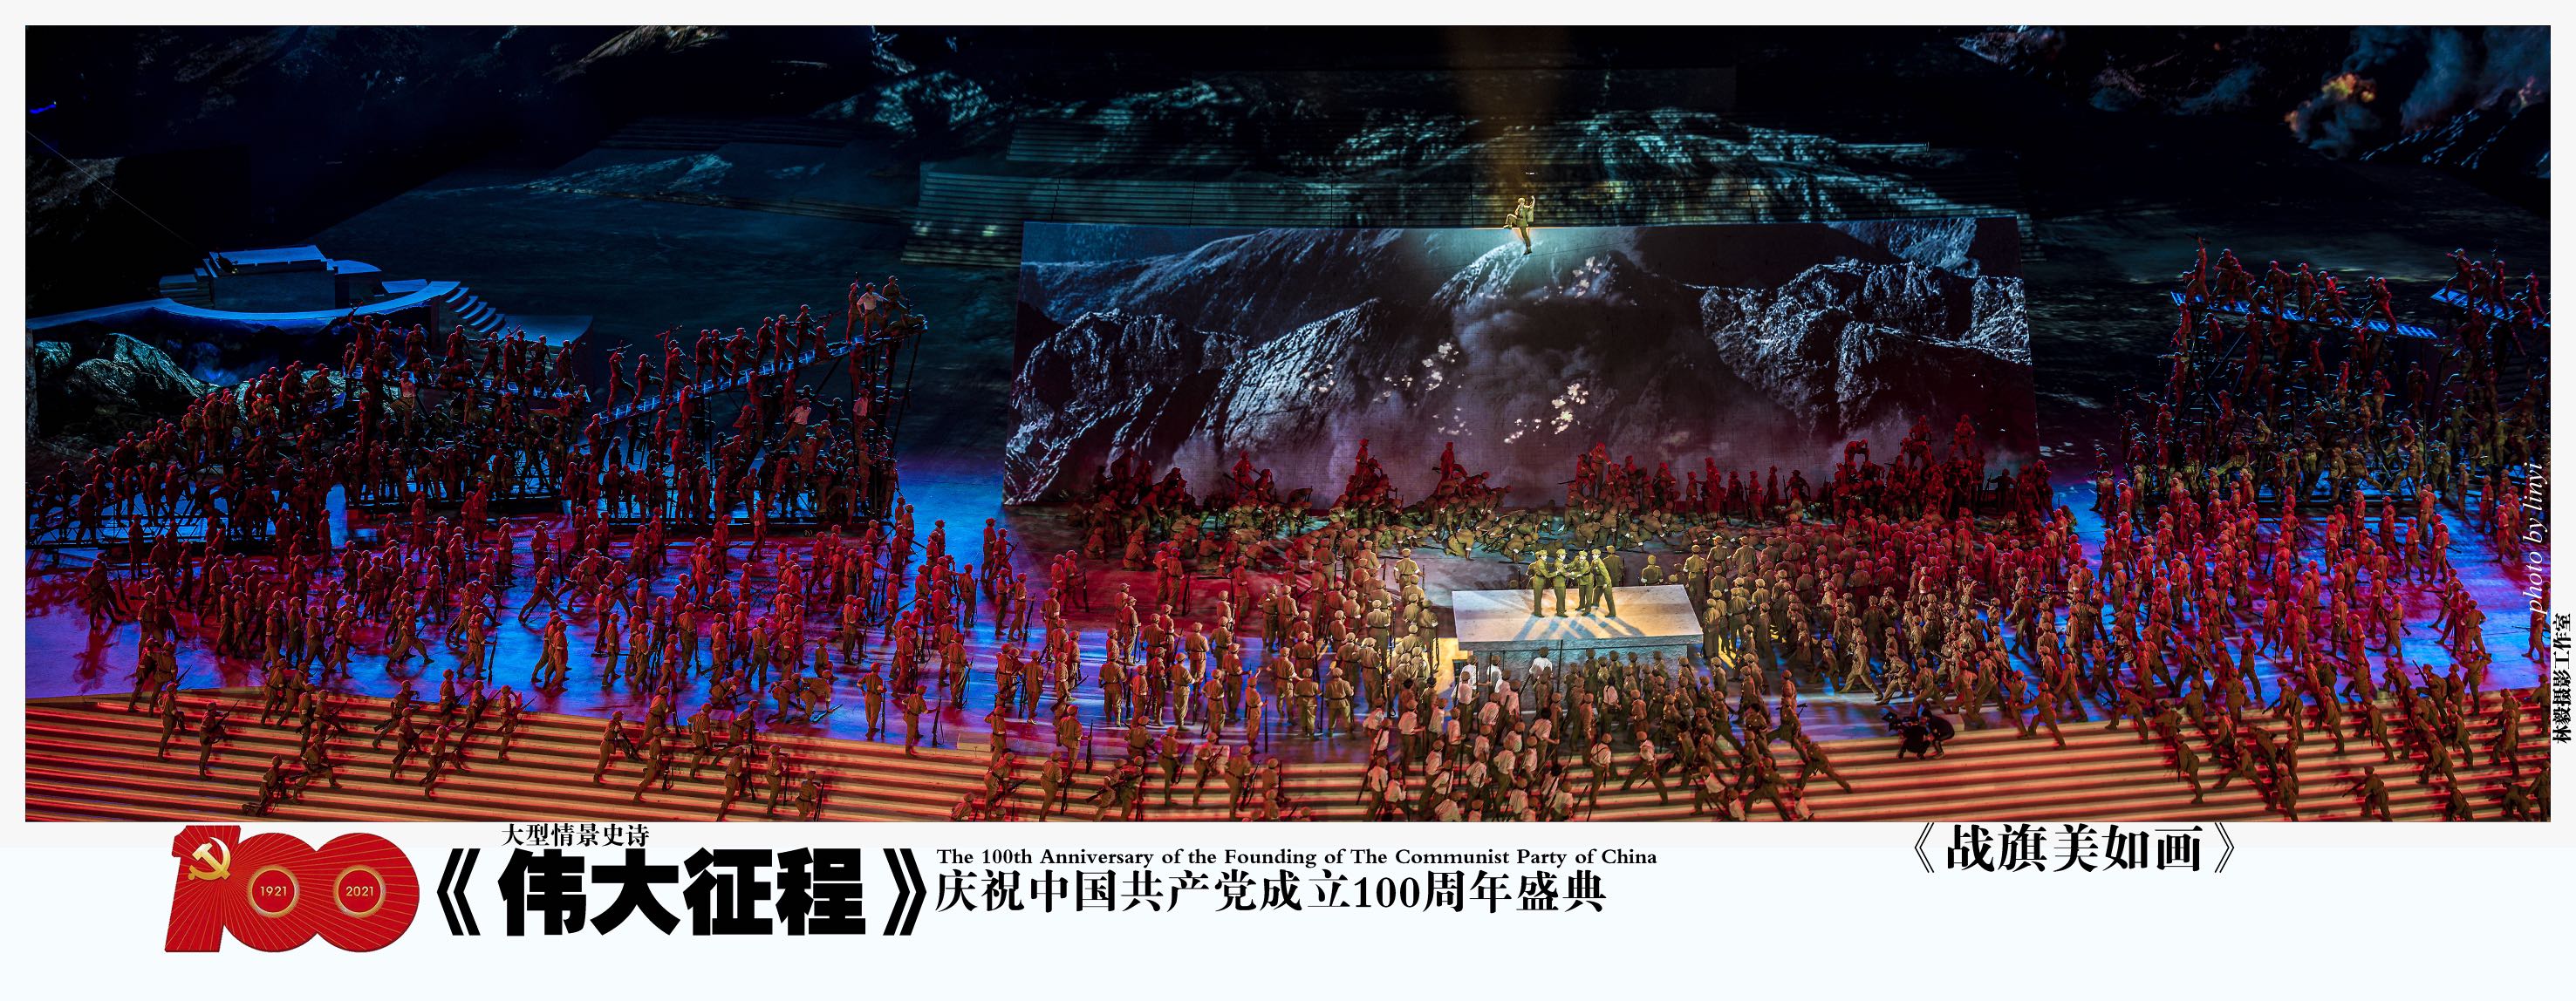 7月1日,庆祝中国共产党成立100周年文艺演出大型情景史诗《伟大